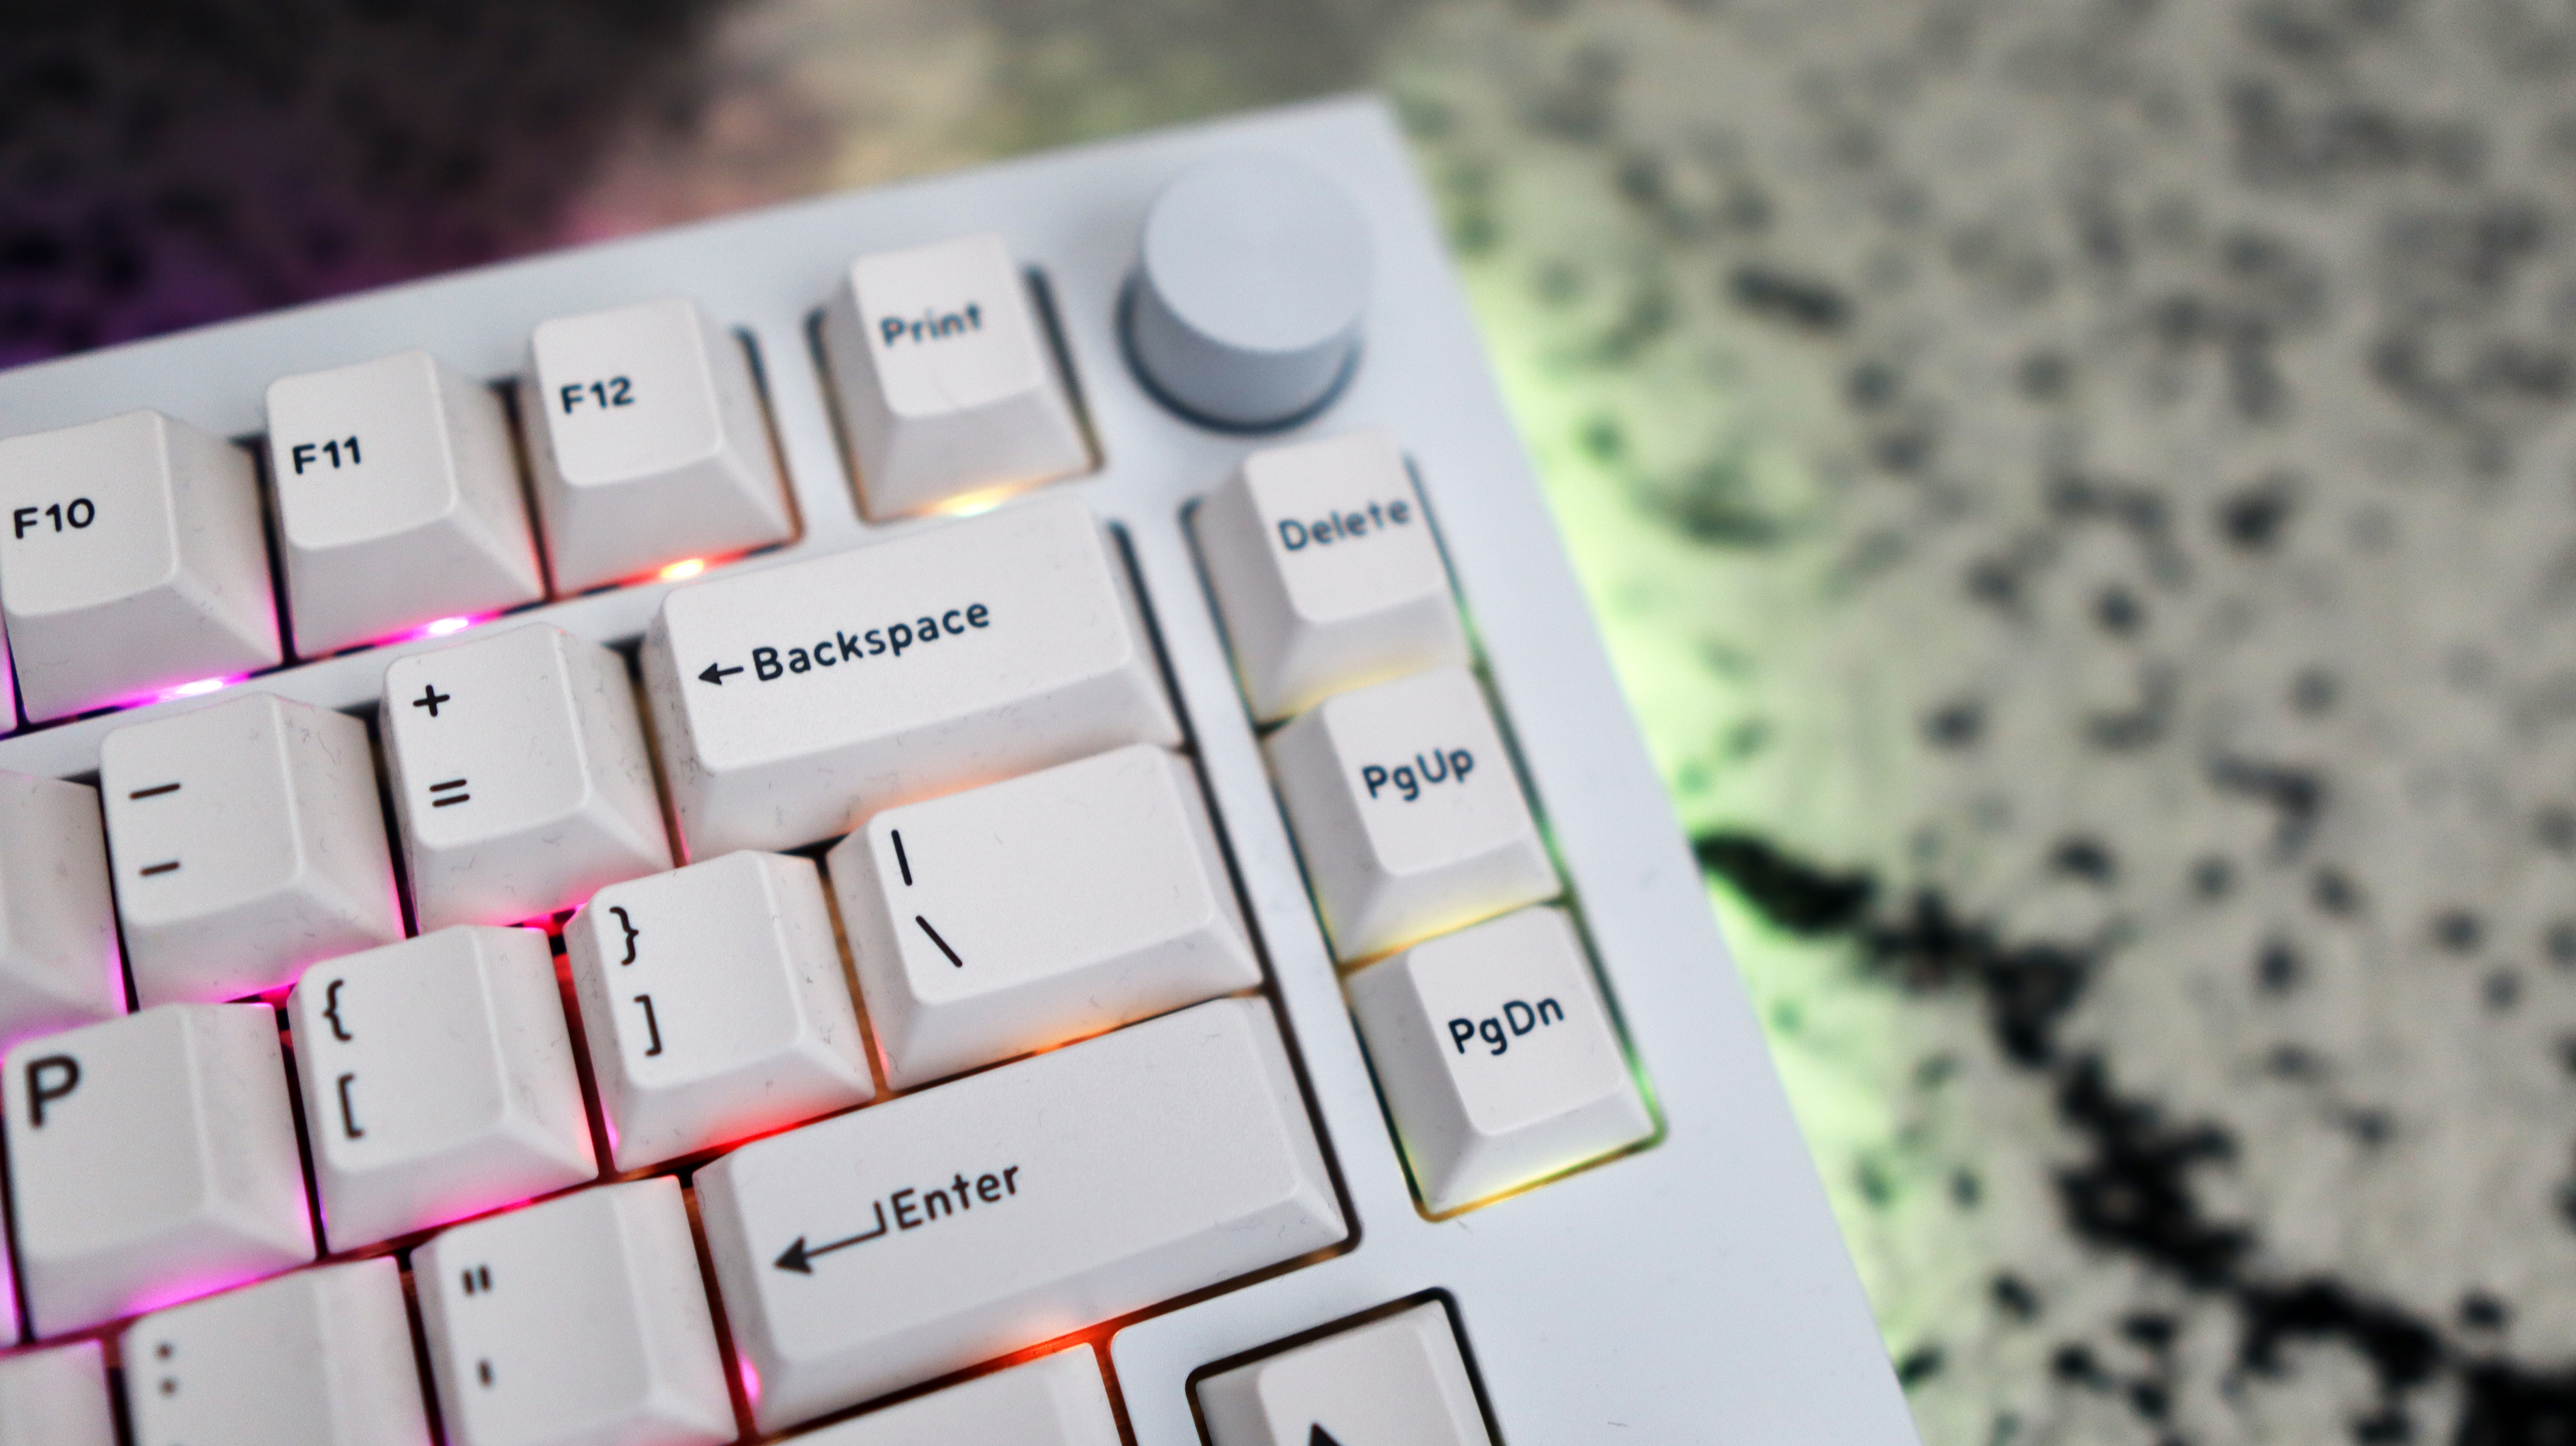 El teclado mecánico Drop Sense75 con iluminación RGB habilitada